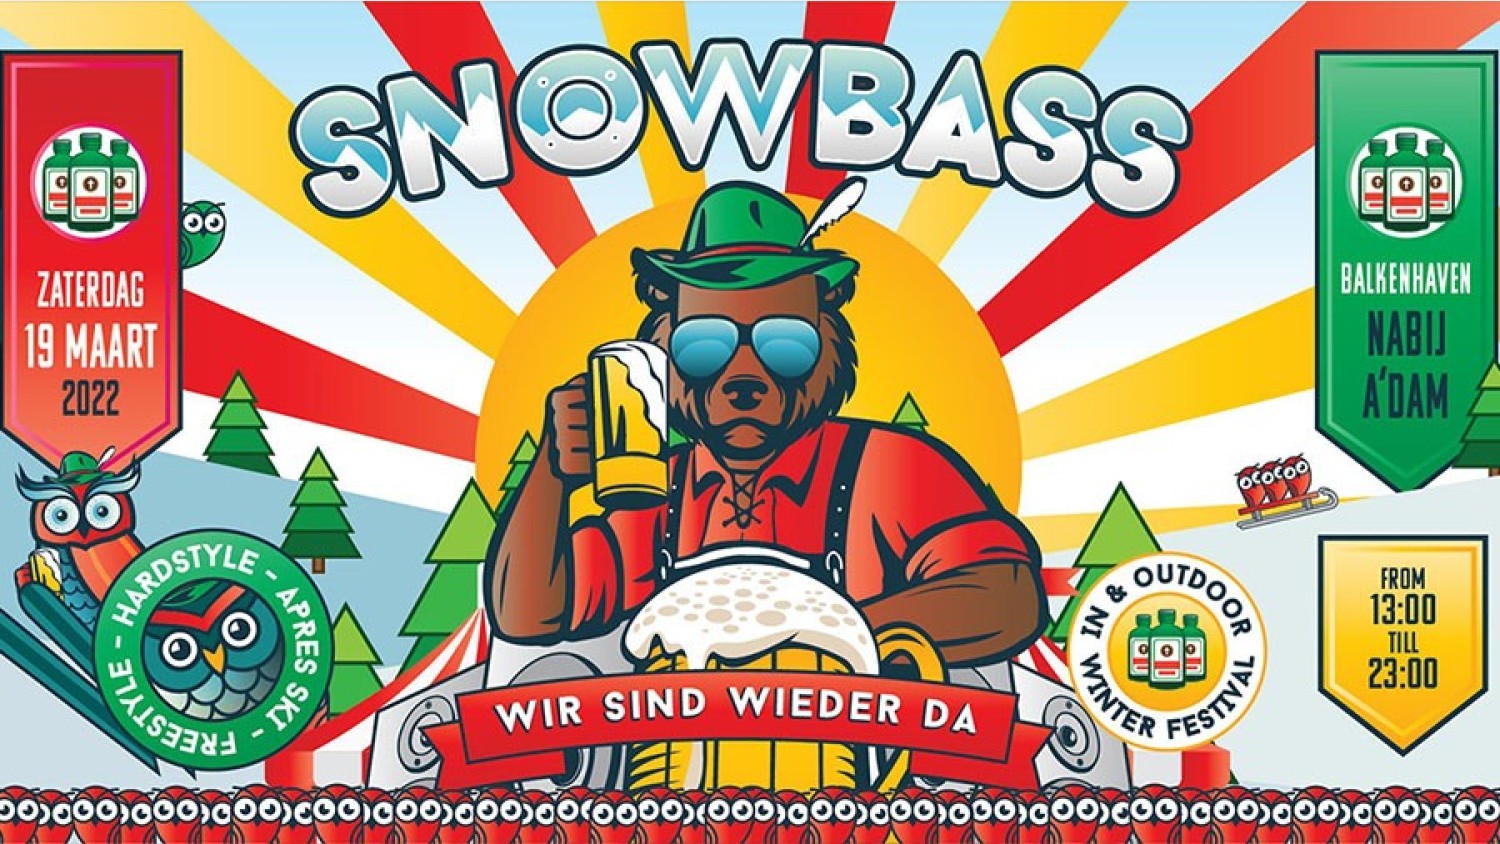 Party nieuws: Snowbass Festival is terug op zaterdag 19 maart 2022